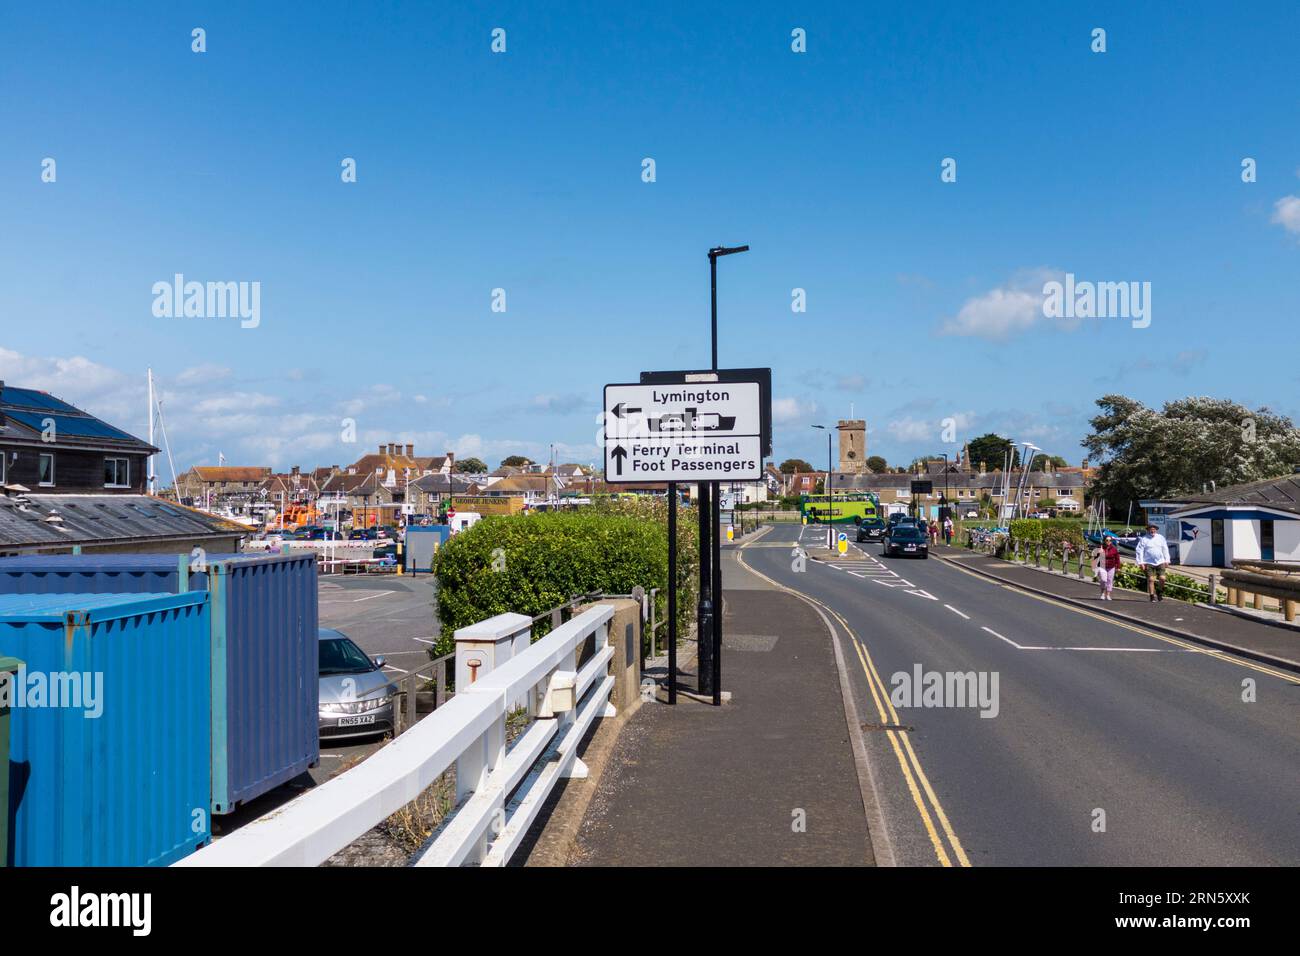 Strada principale che porta al traghetto e al porto di Yarmouth, Isola di Wight, Inghilterra, Regno Unito, con indicazioni stradali per il traghetto, ecc. Foto Stock